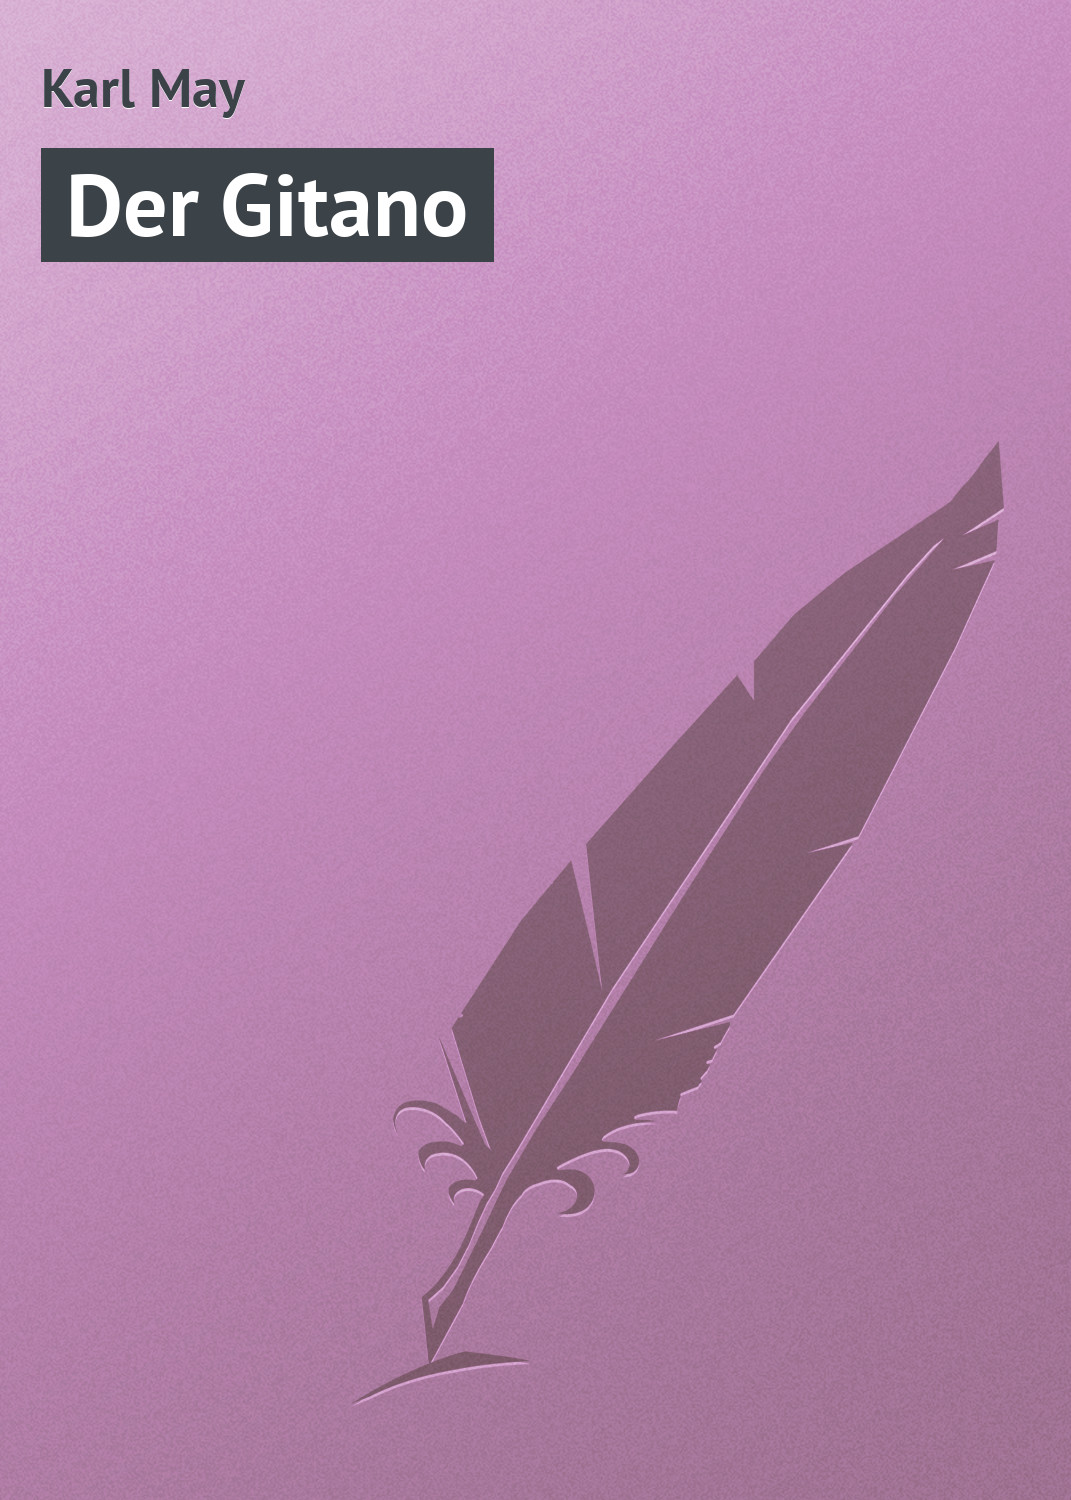 Книга Der Gitano из серии , созданная Karl May, может относится к жанру Классическая проза. Стоимость электронной книги Der Gitano с идентификатором 18405394 составляет 5.99 руб.